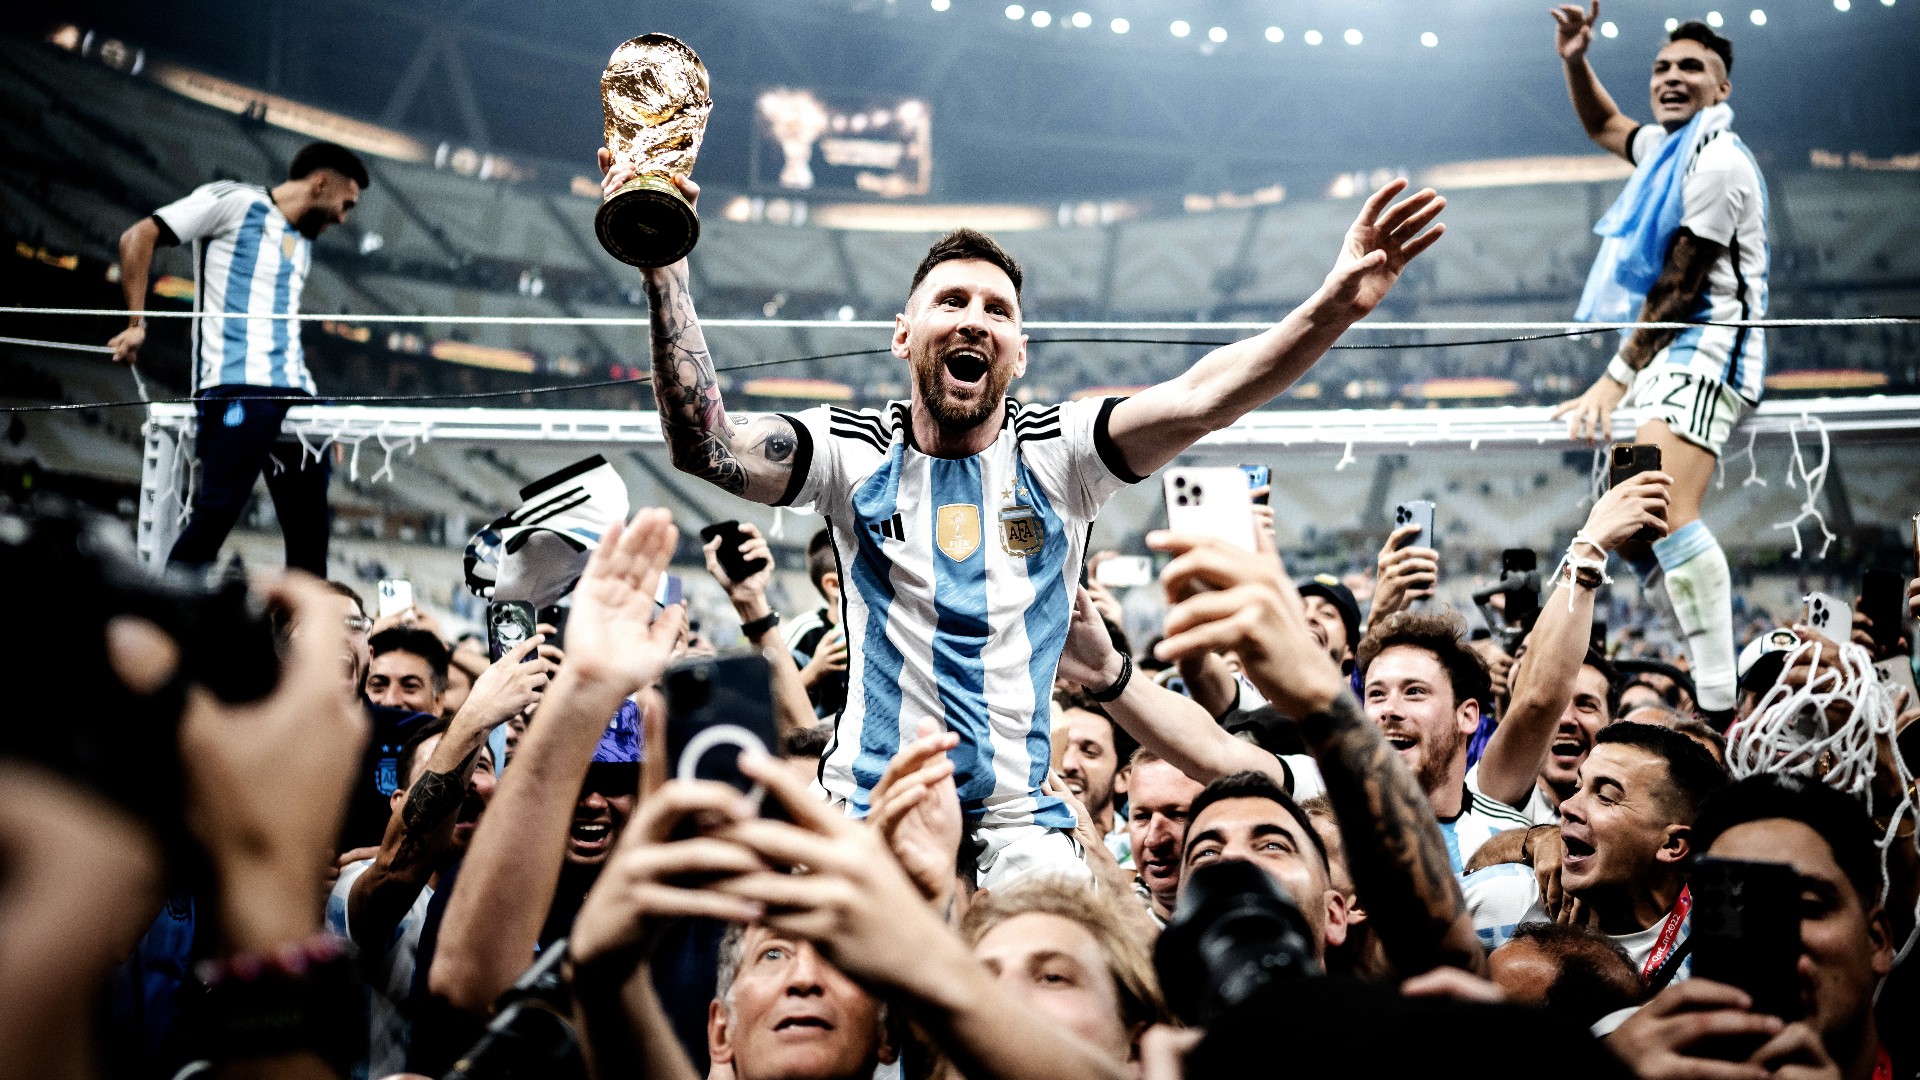 Qué llevaba puesto Leo Messi cuando levantaba el trofeo de campeón del Mundial con Argentina en Qatar 2022?. DAZN News España